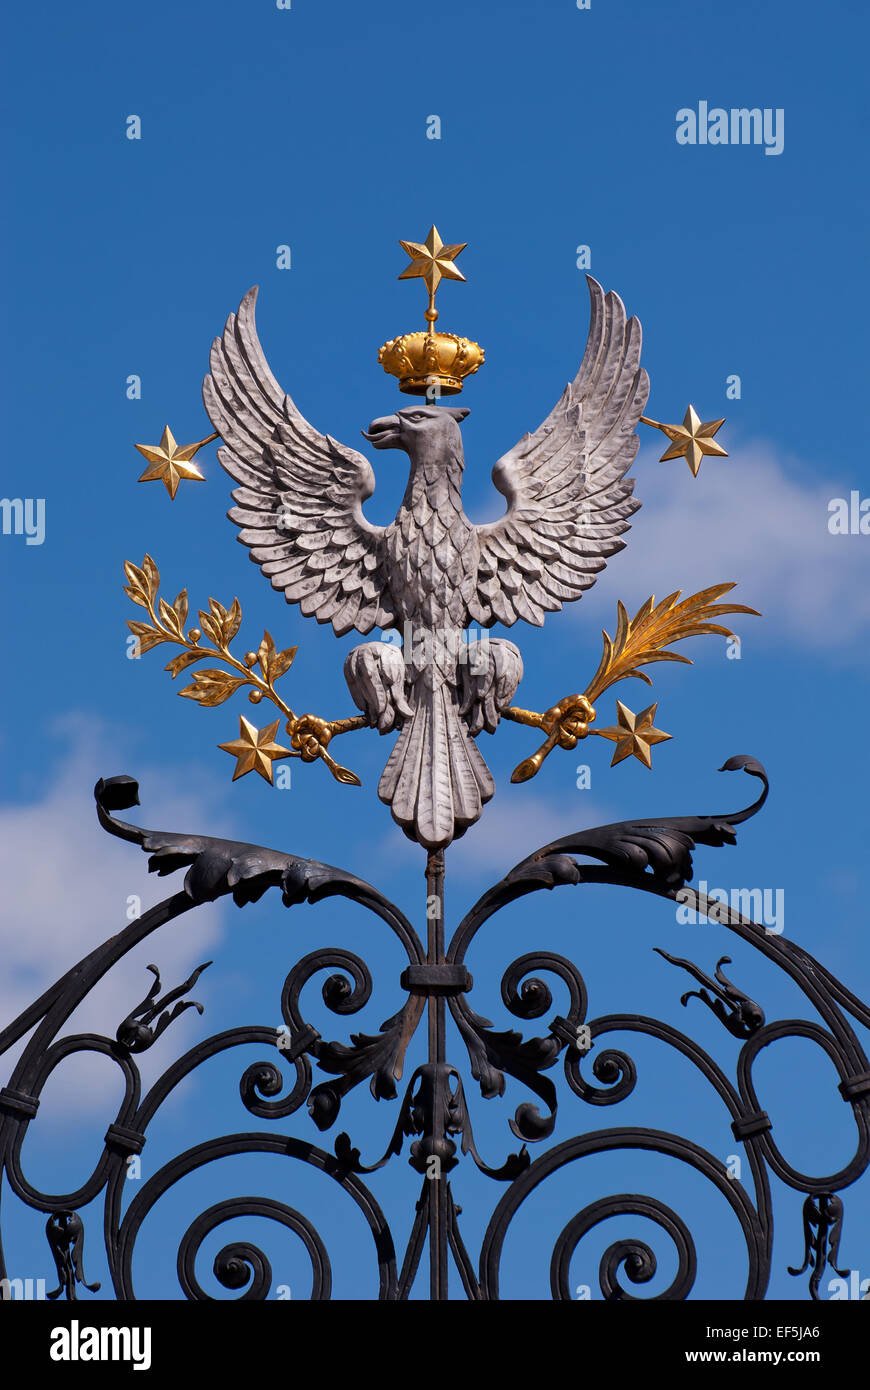 Uniwersytet Warszawski eagle emblem Stock Photo